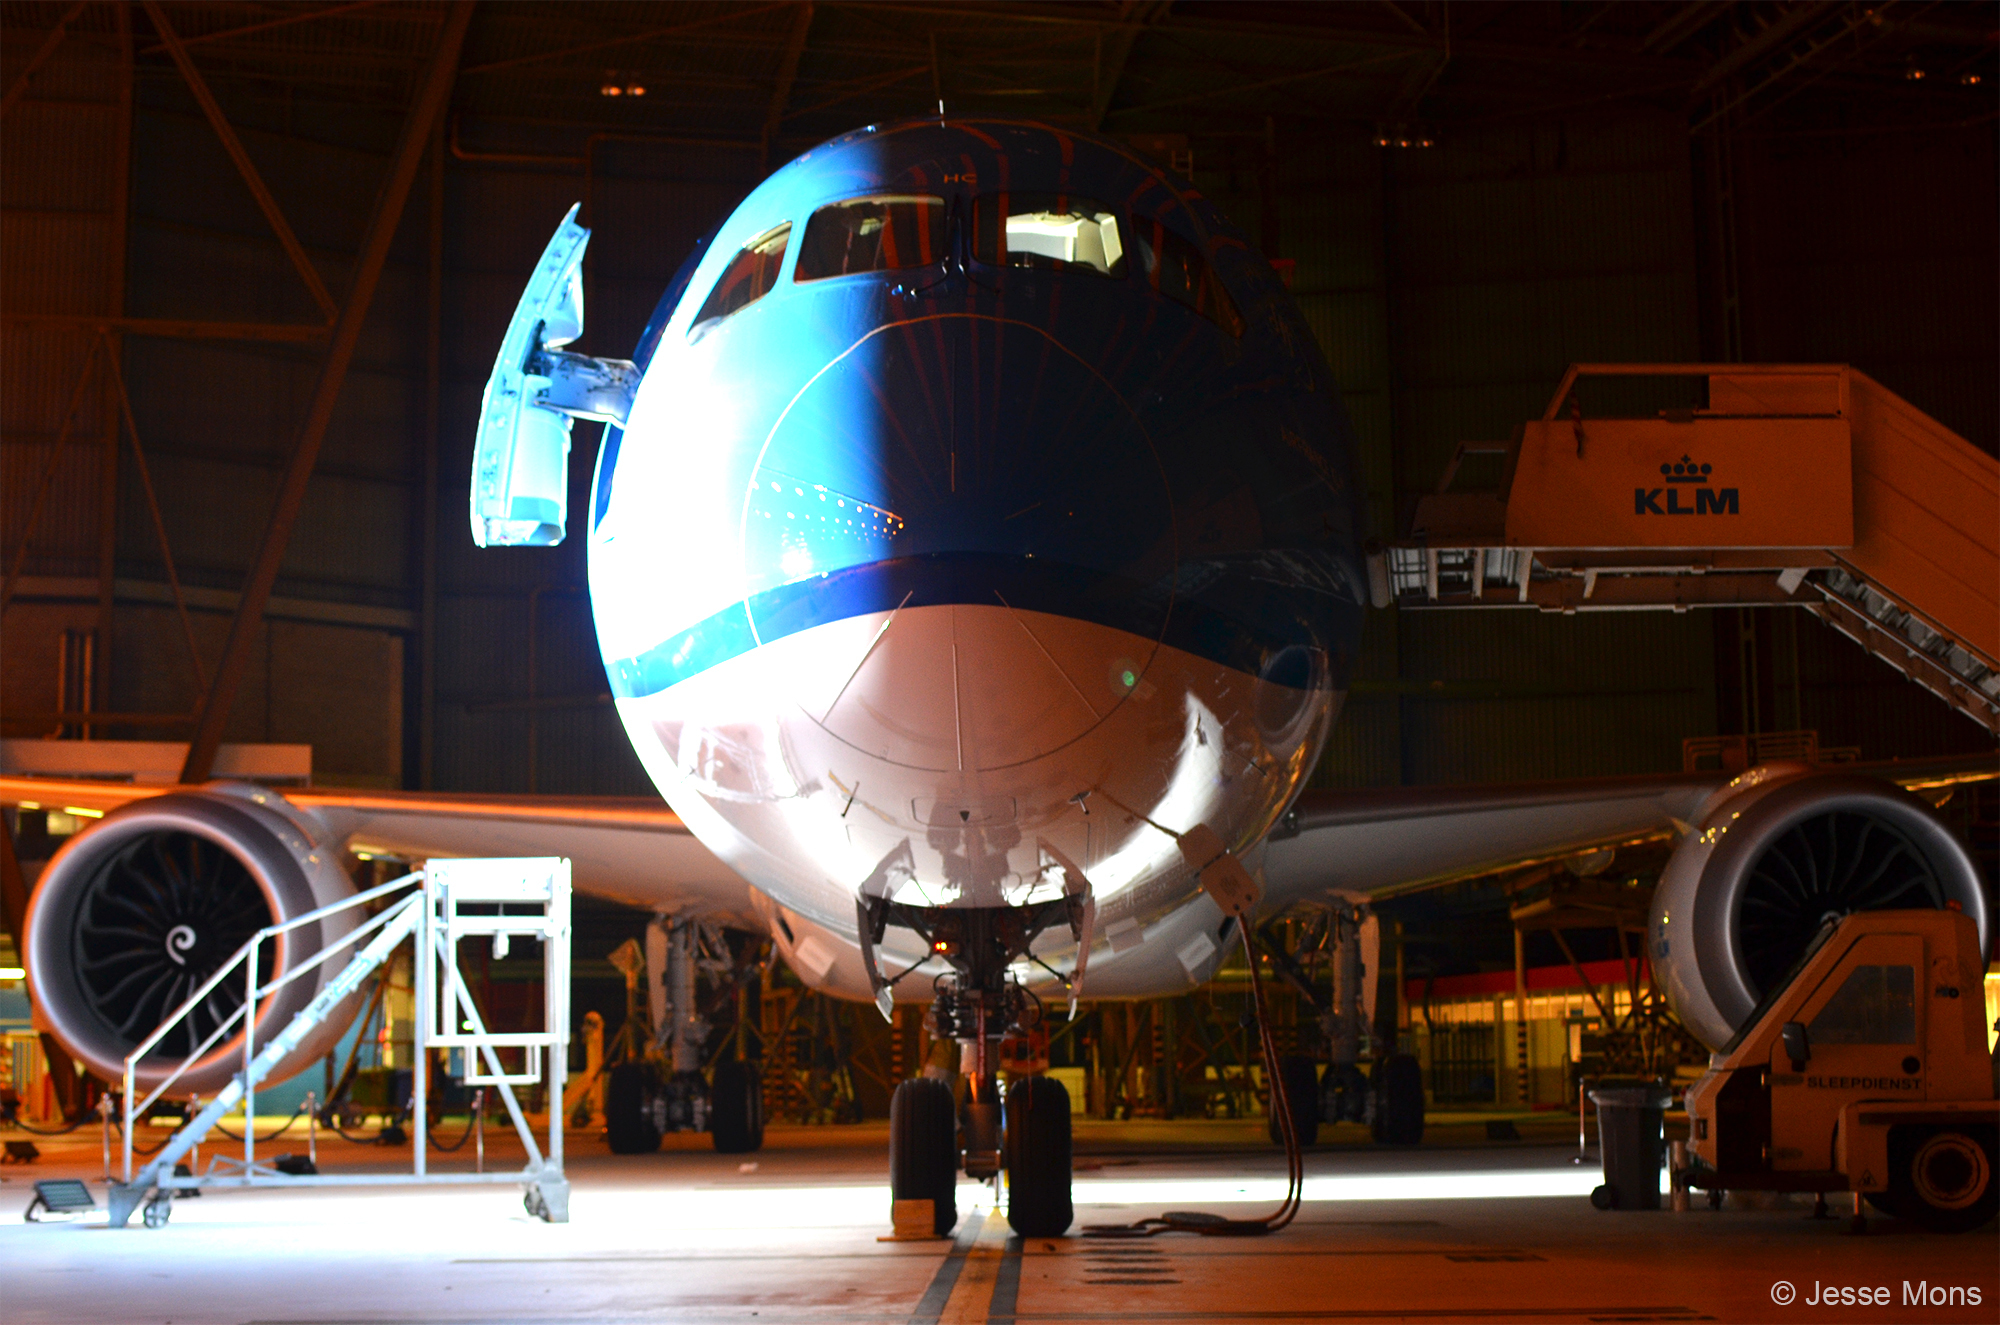 "Распаковываем" новый самолет компании KLM